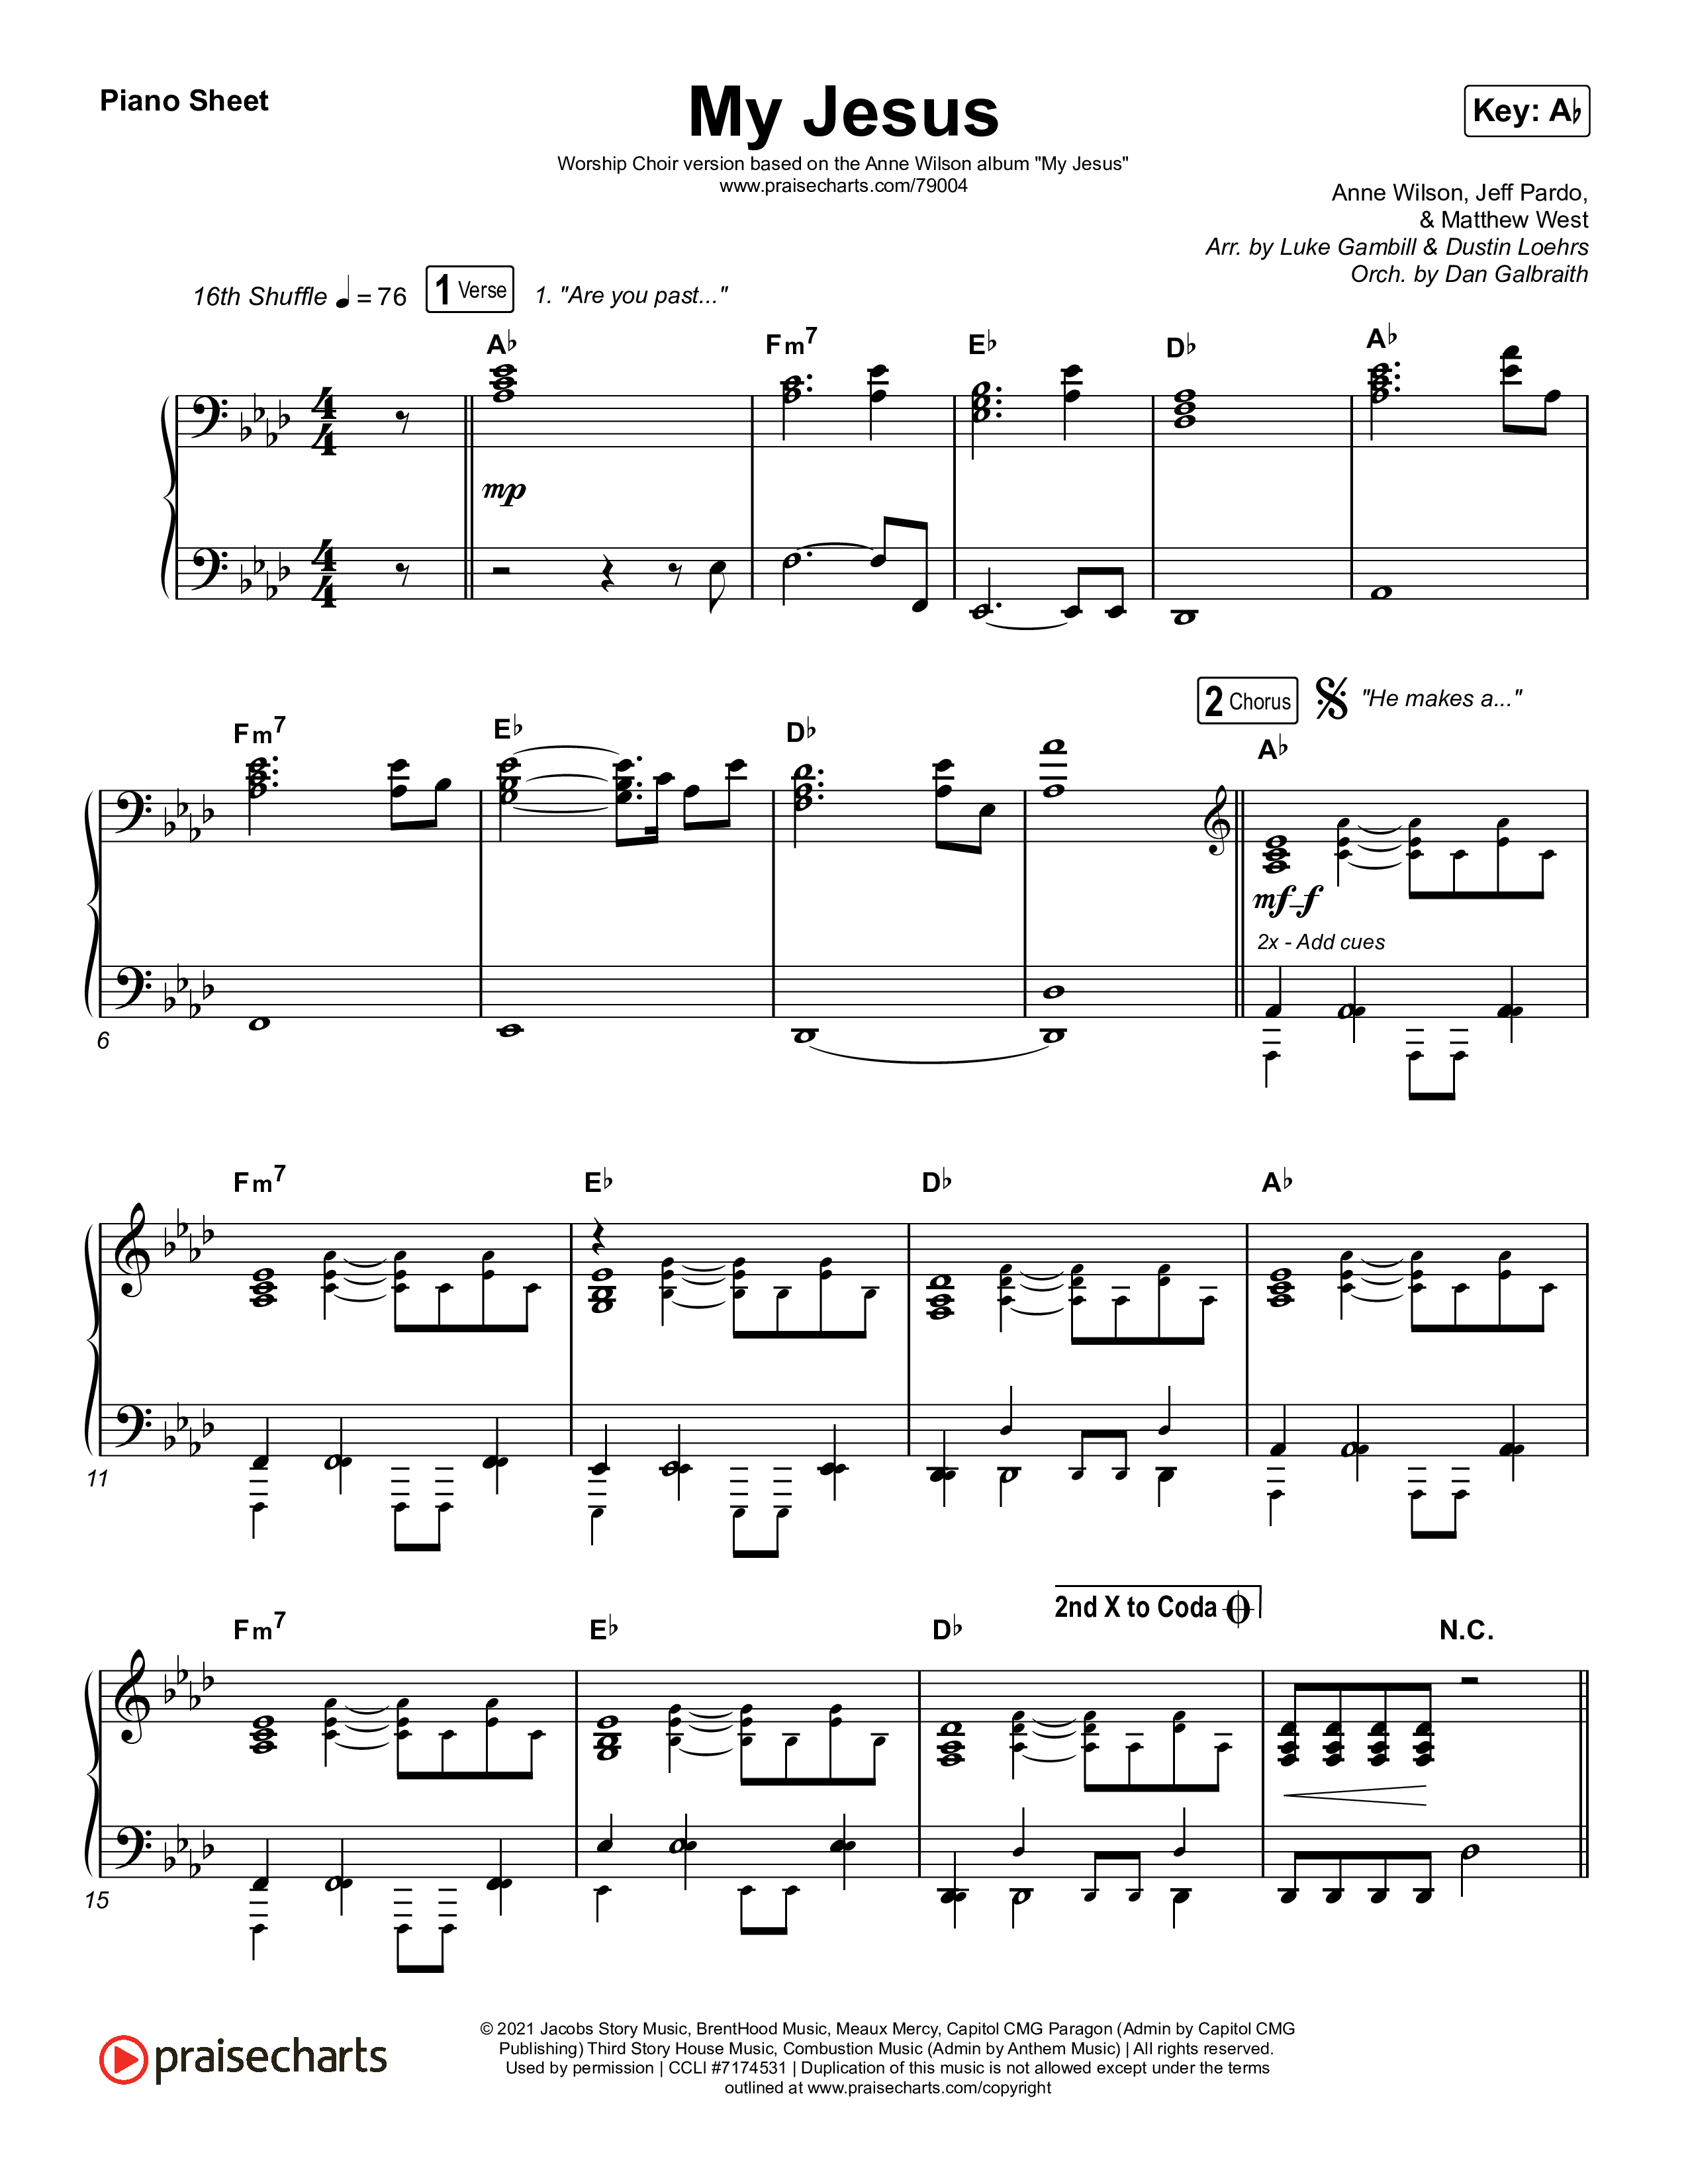 My Jesus (Sing It Now SATB) Piano Sheet (Anne Wilson / Arr. Luke Gambill)